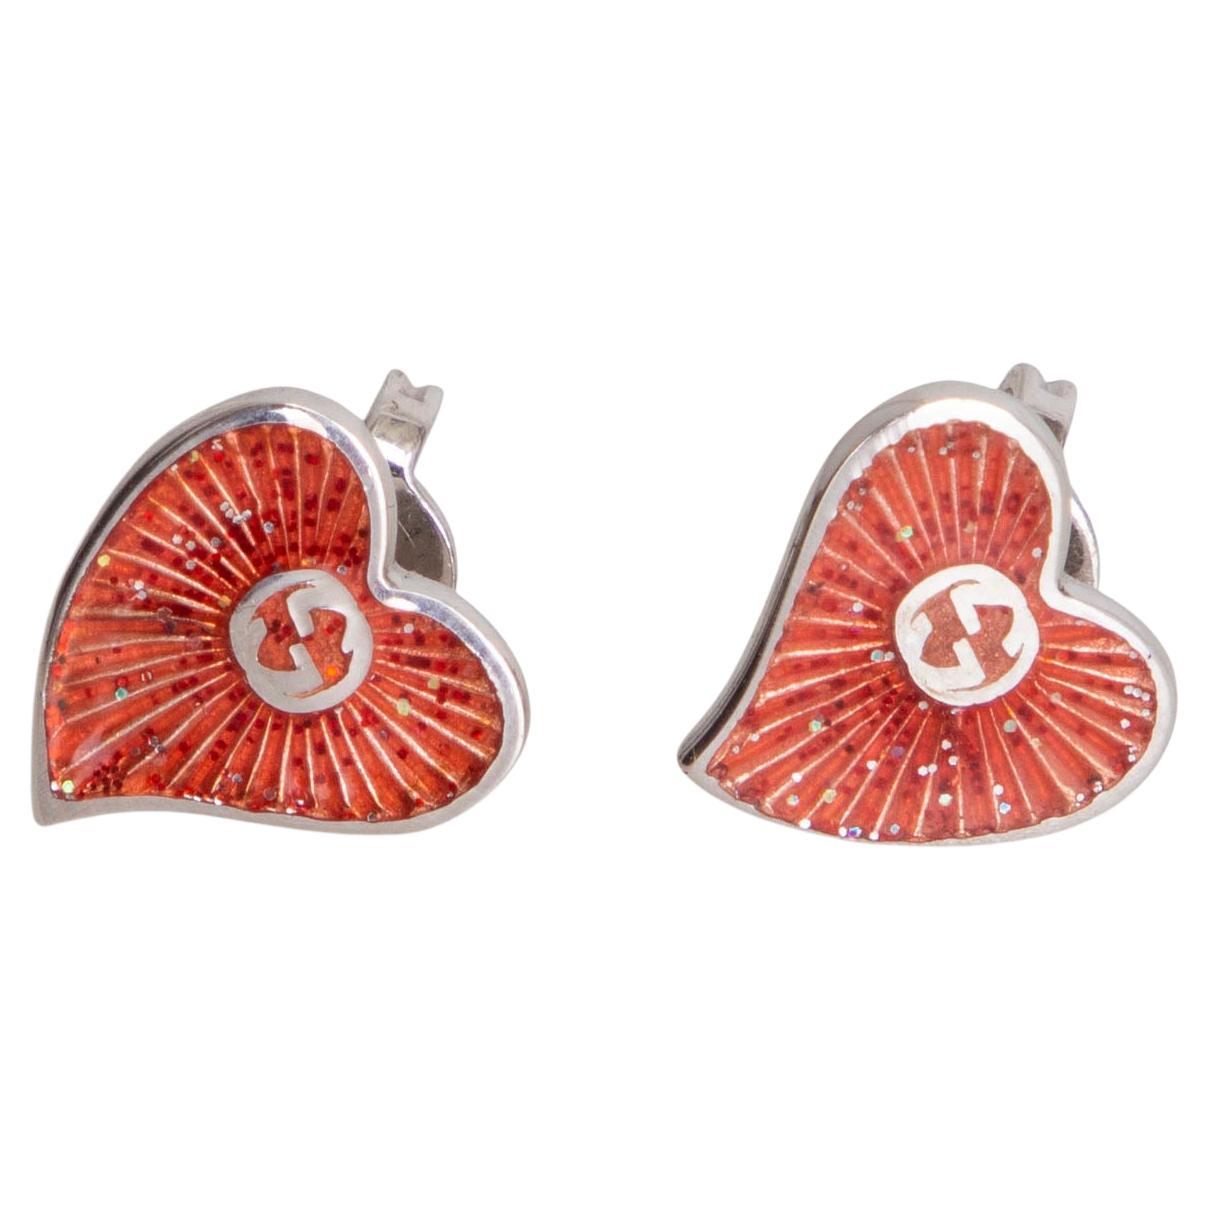 GUCCI silver-tone & red enamel HEART Earrings